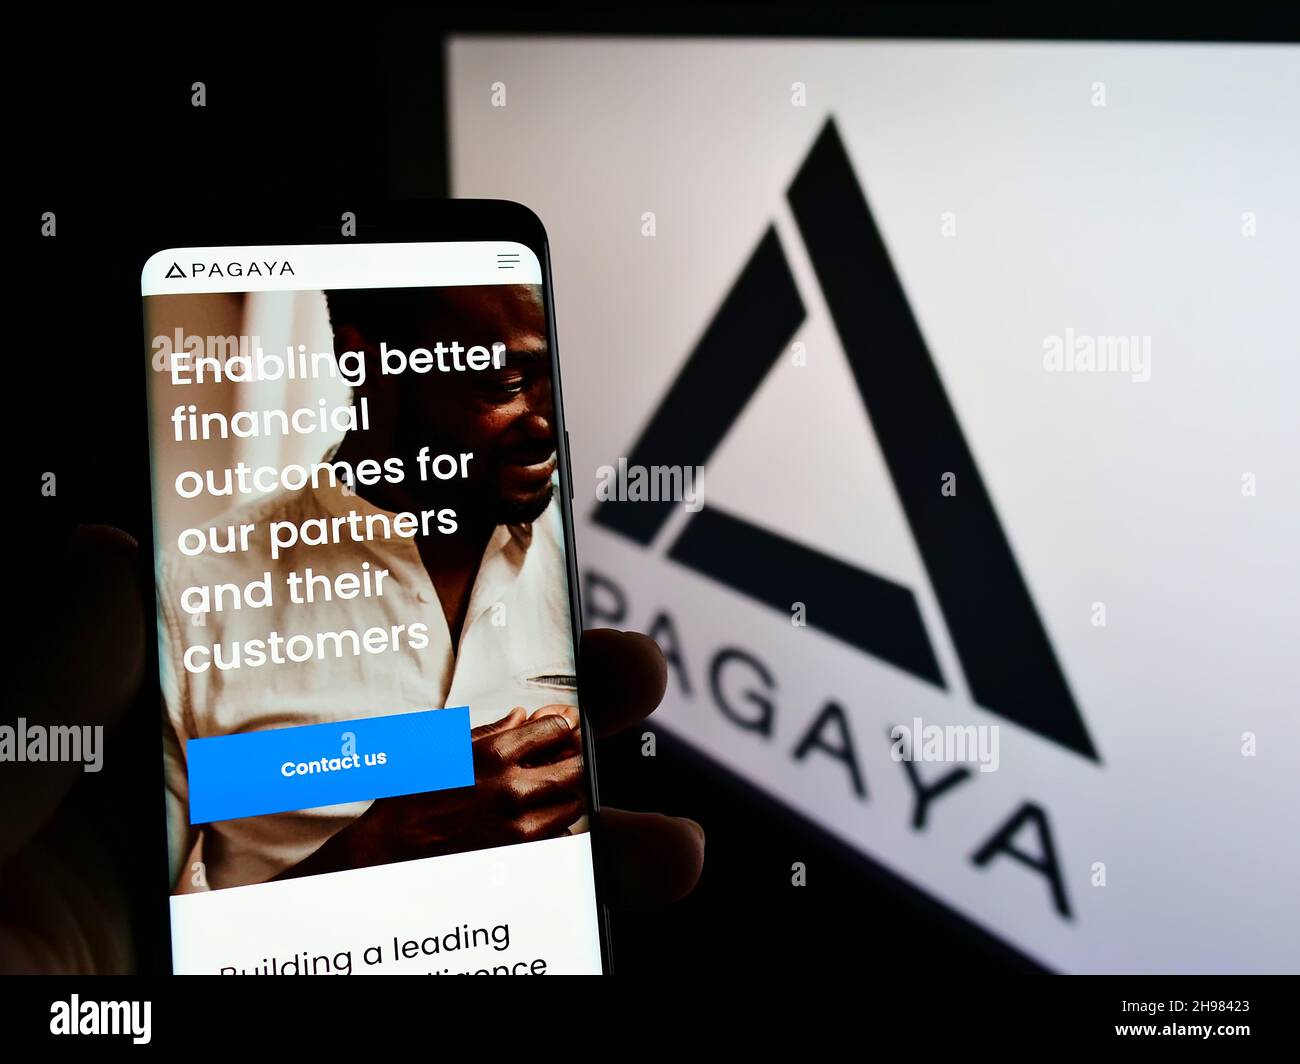 Personne tenant le téléphone mobile avec la page web de la société de technologie financière Pagaya Investments à l'écran avec logo.Concentrez-vous sur le centre de l'écran du téléphone. Banque D'Images